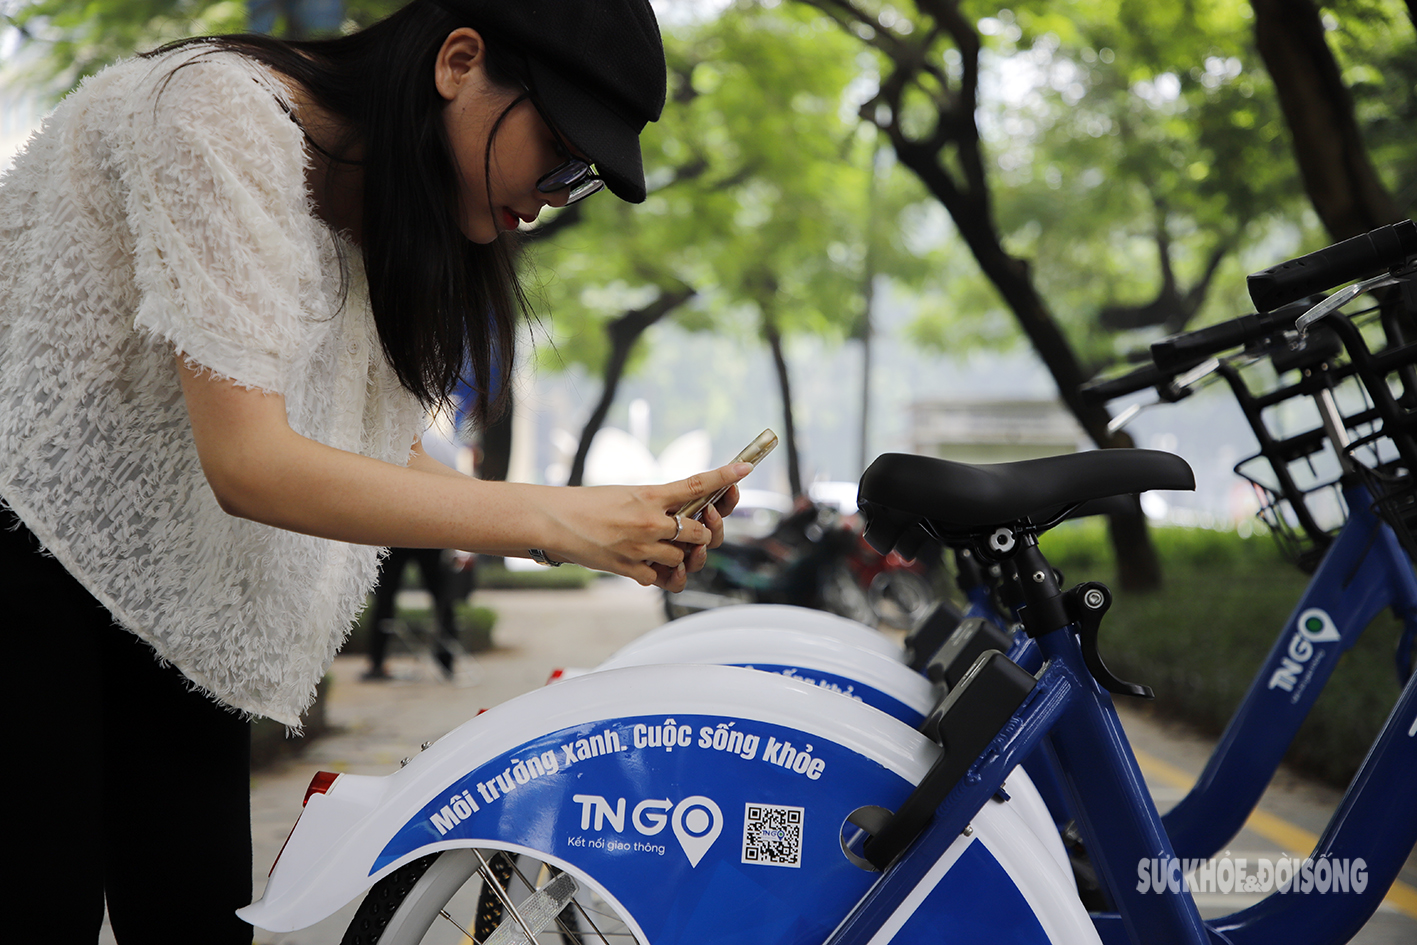 Xe đạp công cộng chính thức xuất hiện, người dân Thủ đô phấn khởi trải nghiệm - Ảnh 9.